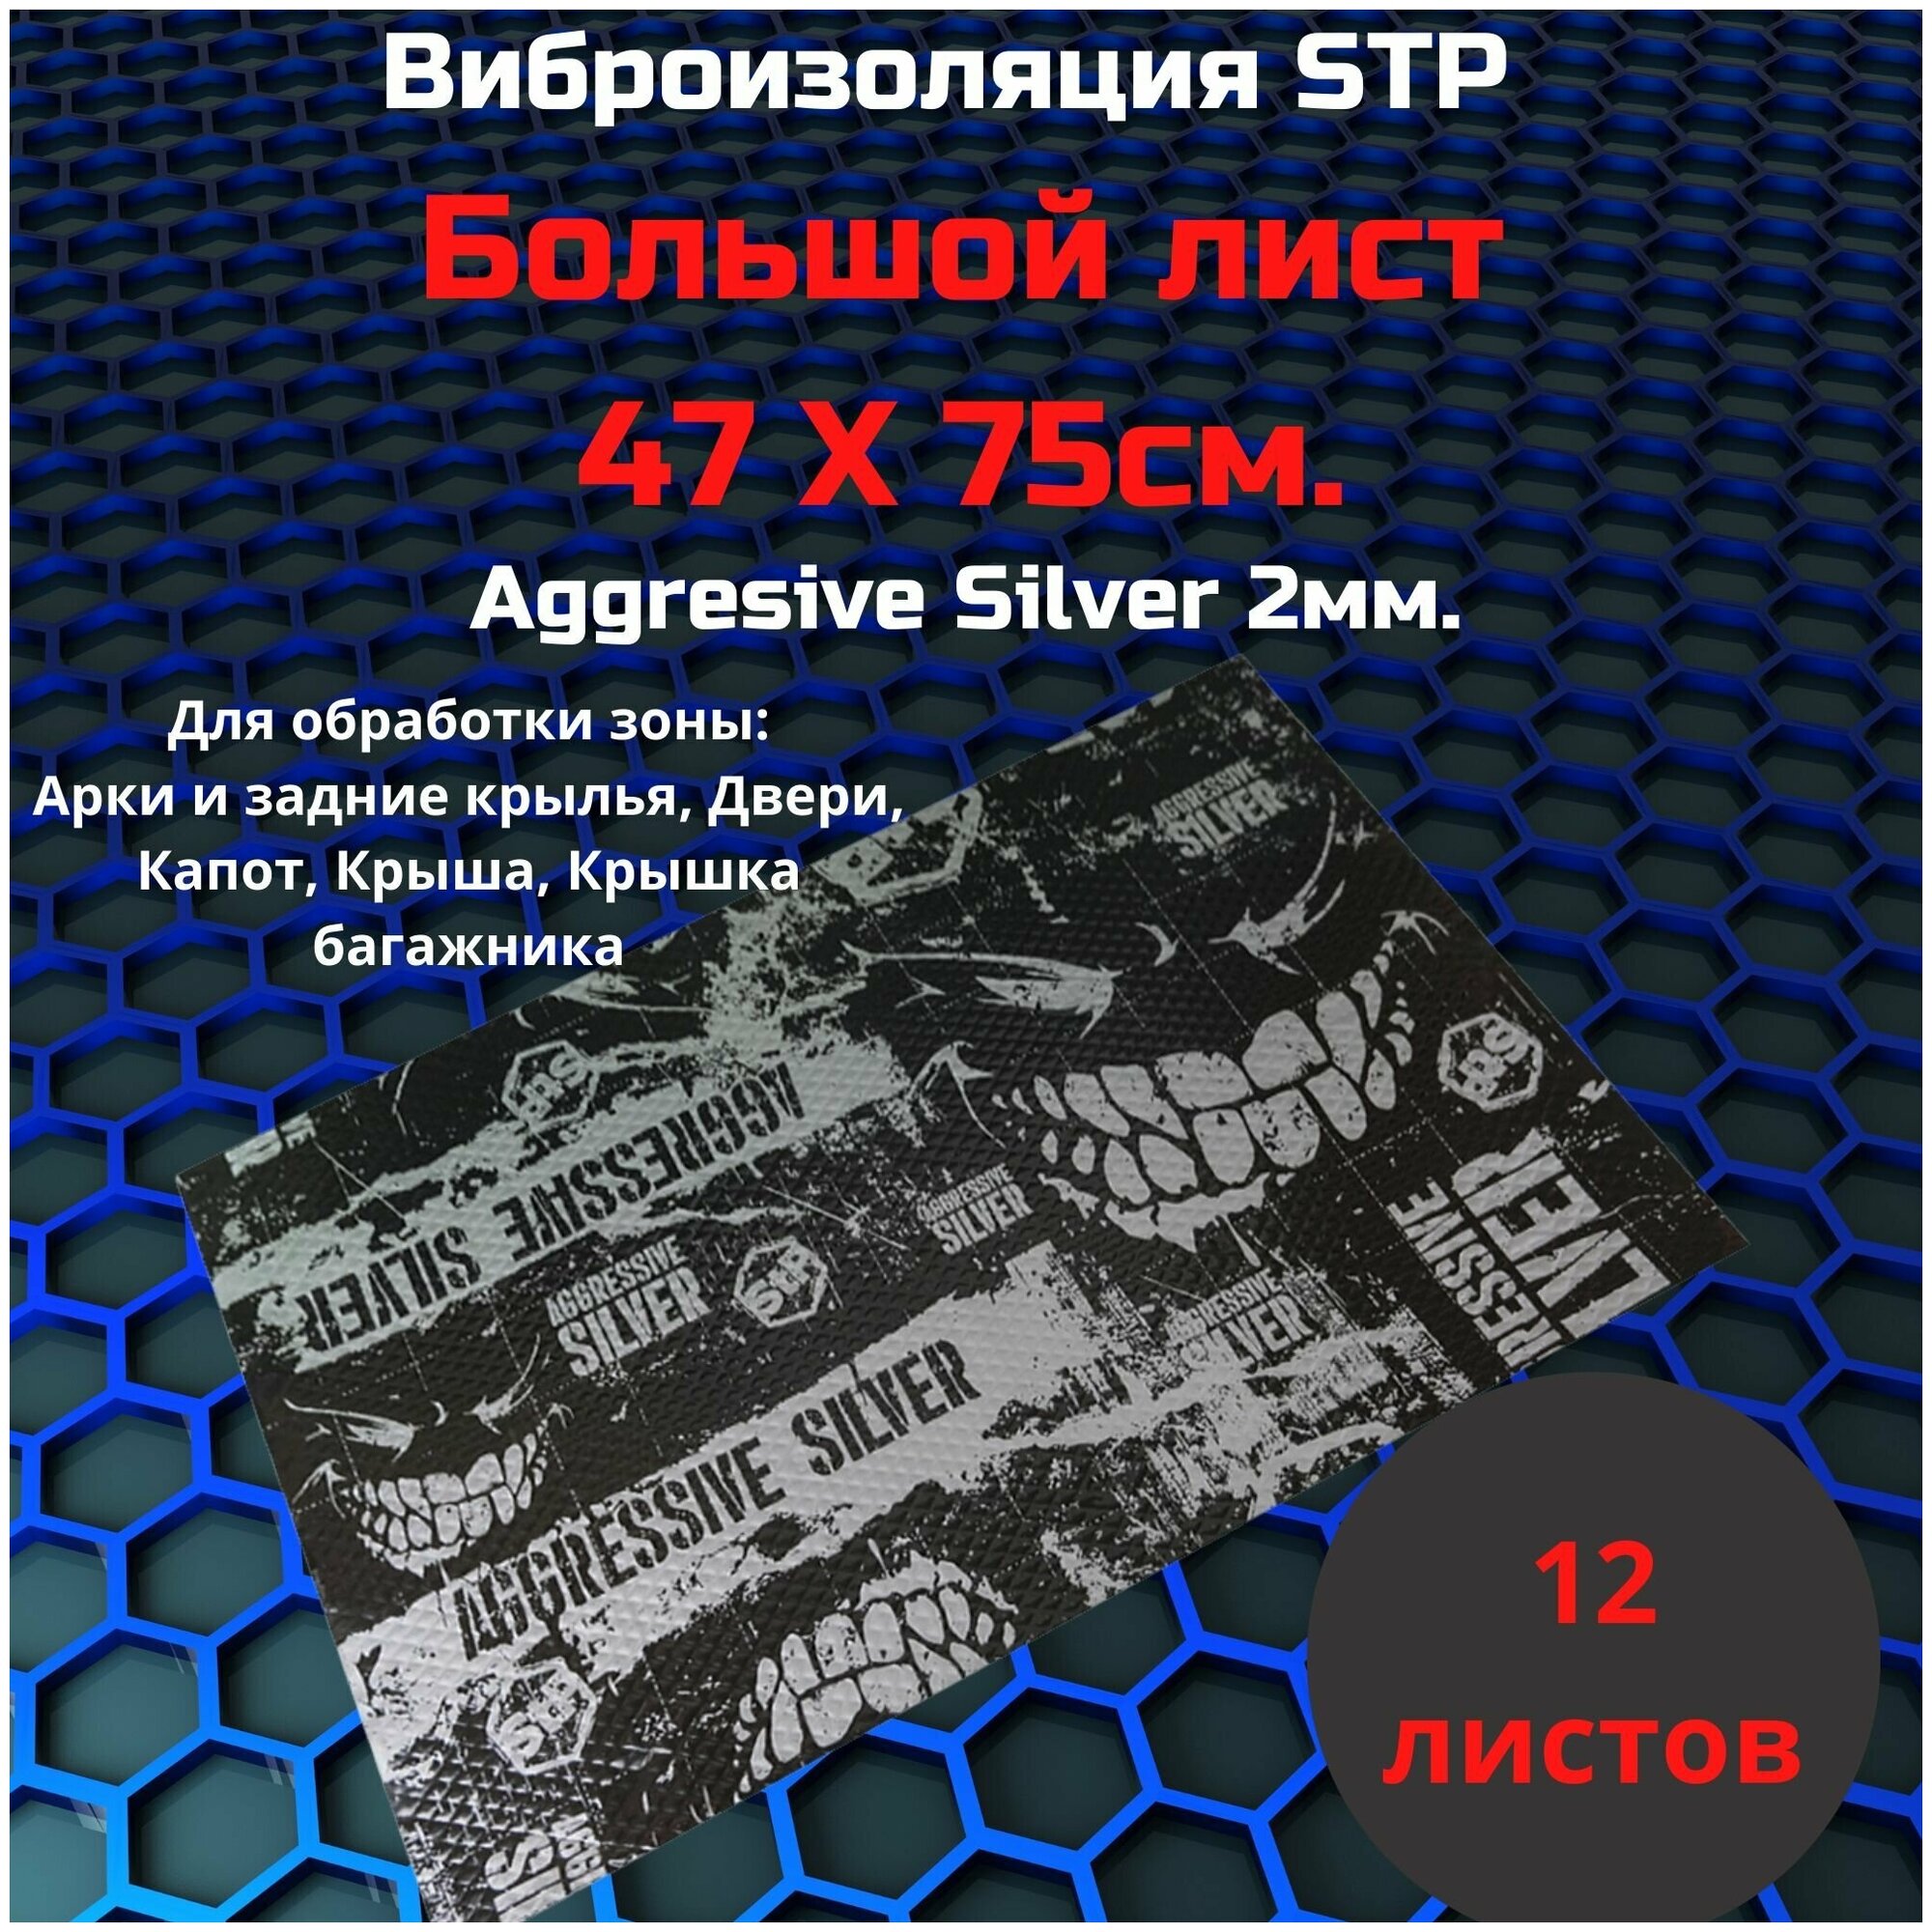 Виброизоляция Stp Aggressive Silver / Вибродемпфер СТП Агрессив сильвер 12 листов.(75*47)